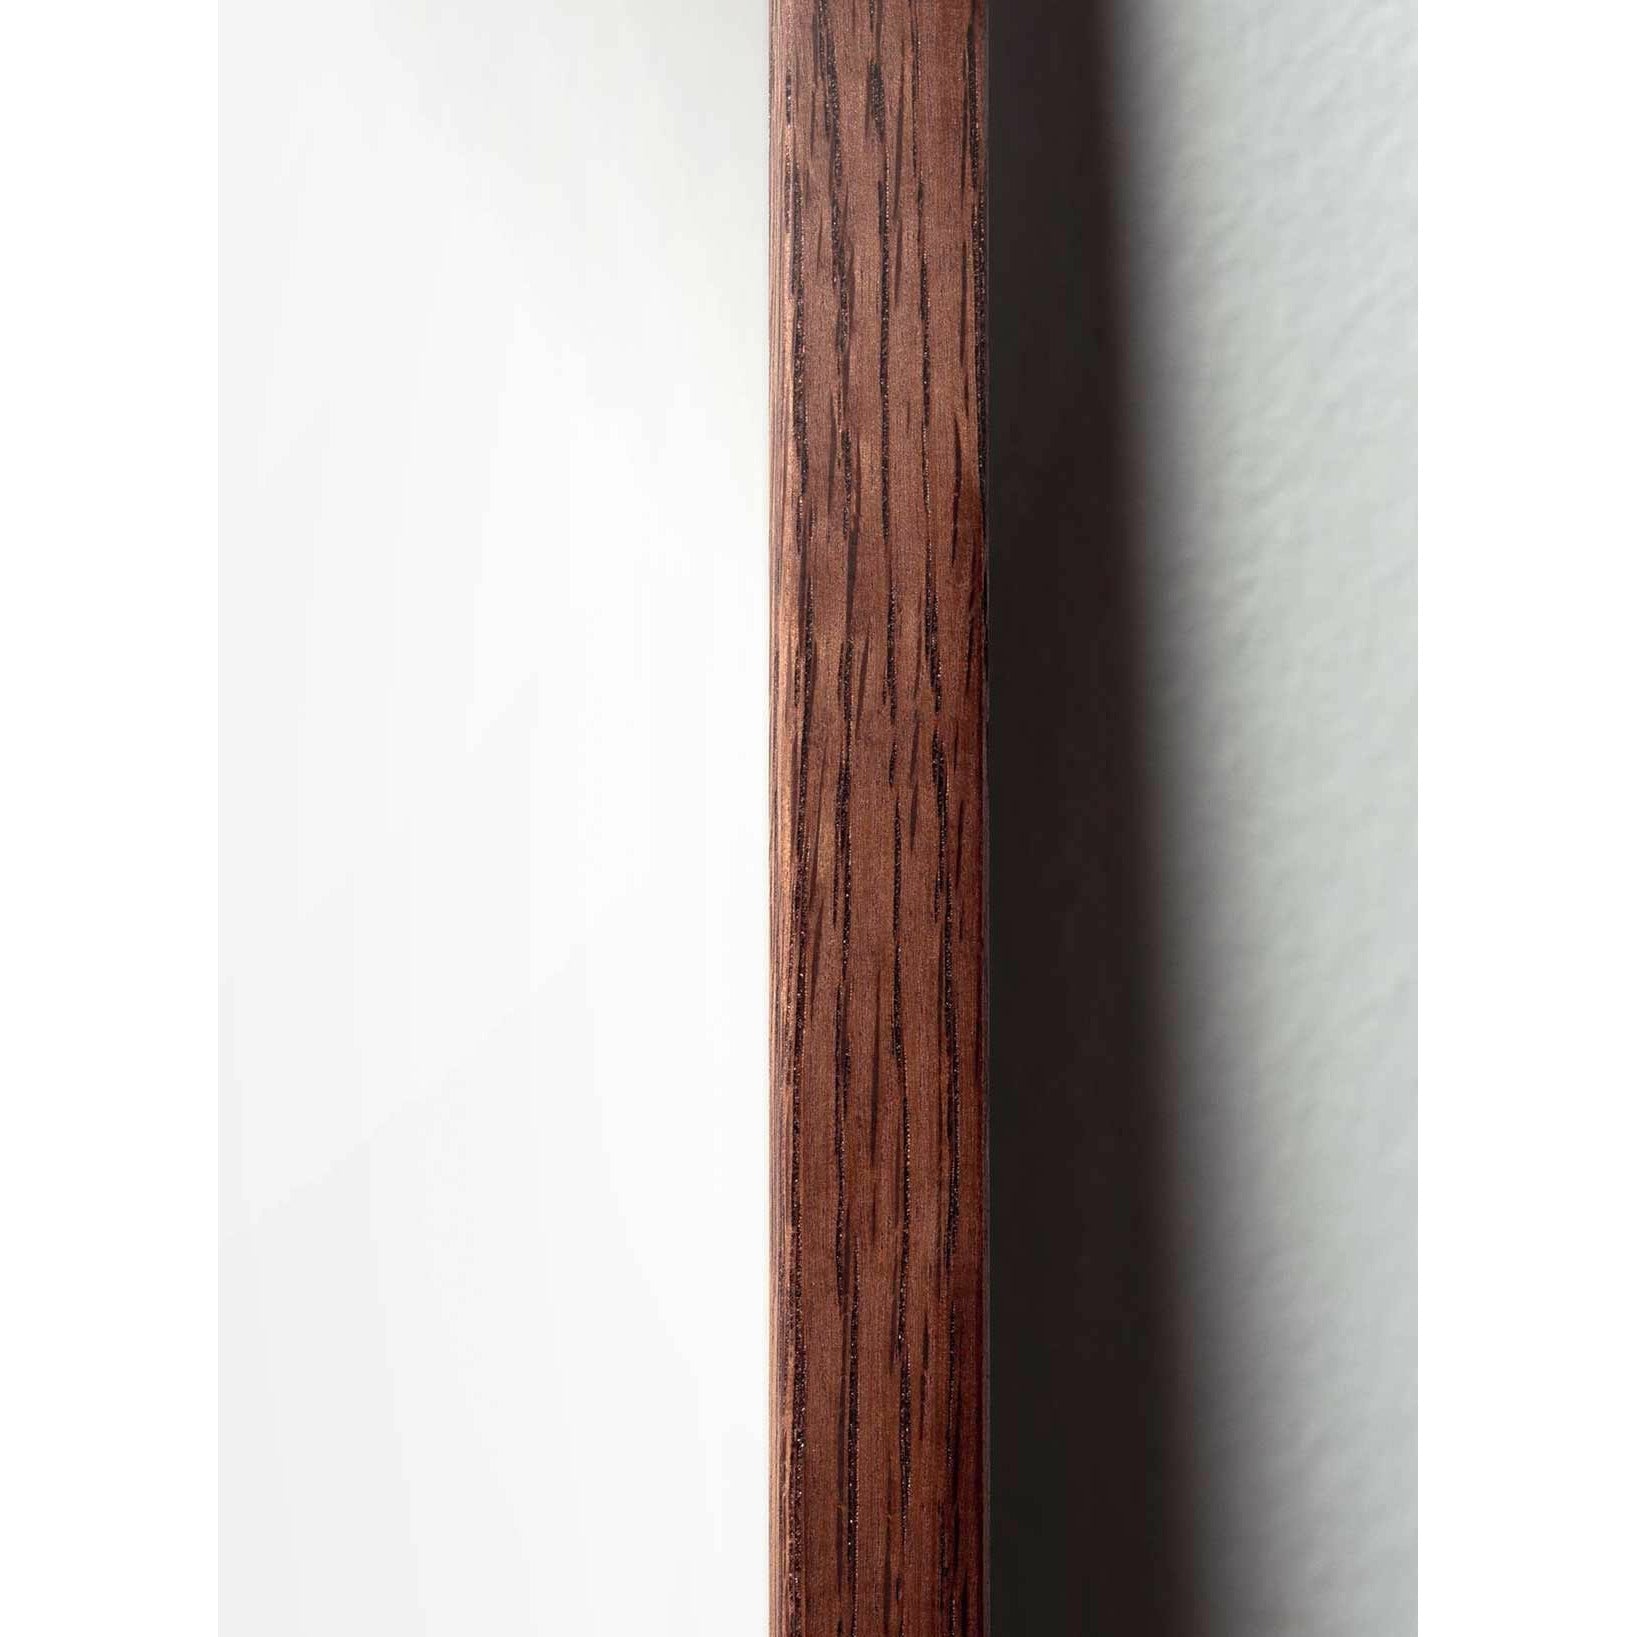 Póster de línea de huevo de creación, marco de madera oscura A5, fondo blanco